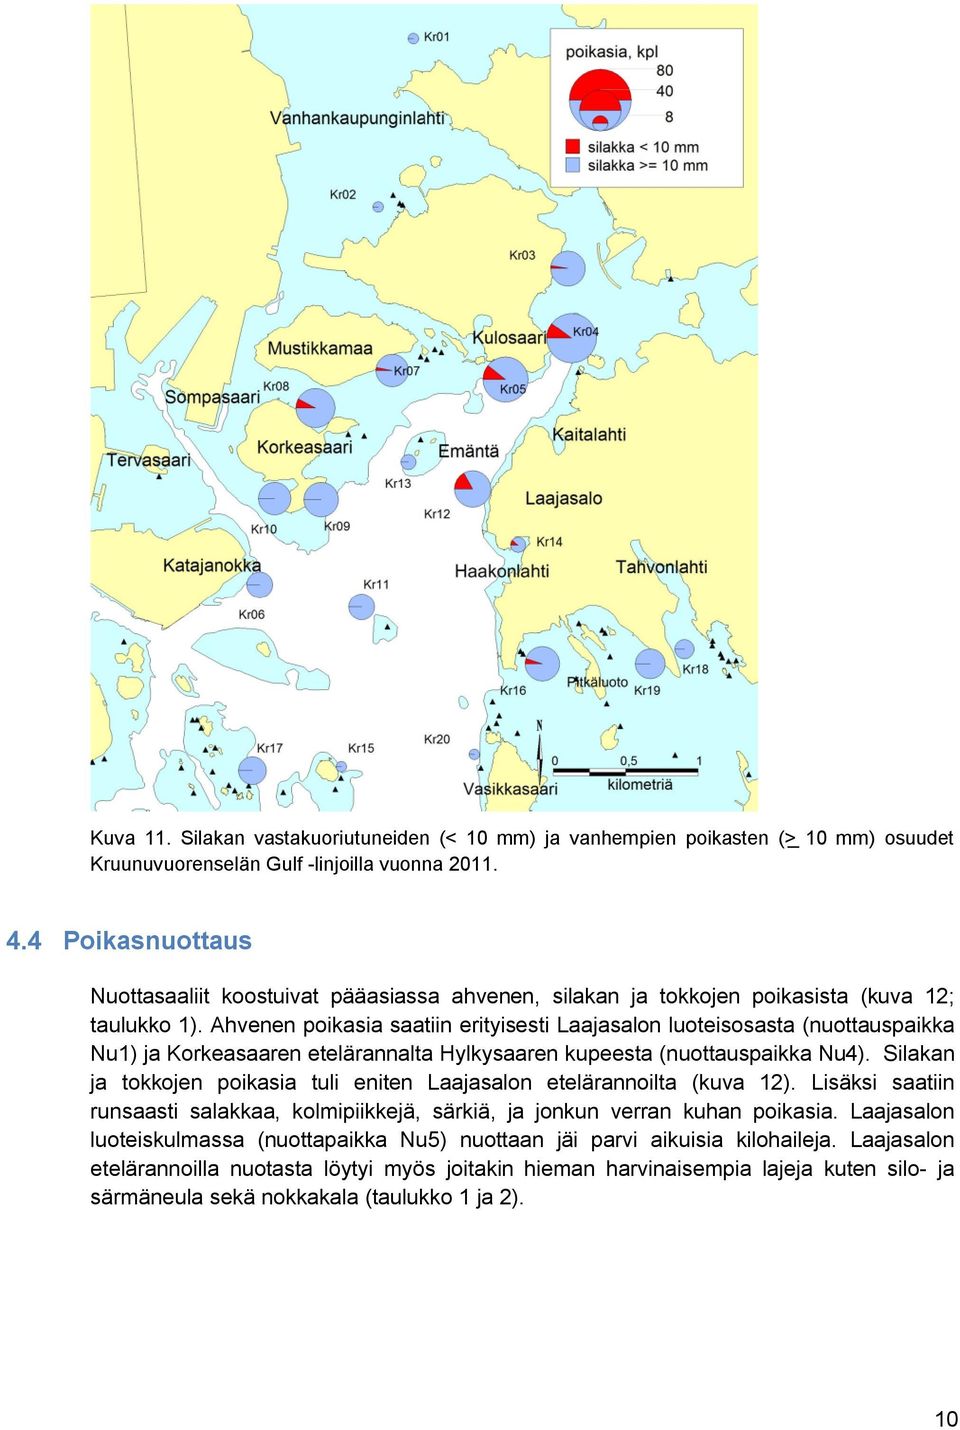 Ahvenen poikasia saatiin erityisesti Laajasalon luoteisosasta (nuottauspaikka Nu) ja Korkeasaaren etelärannalta Hylkysaaren kupeesta (nuottauspaikka Nu).